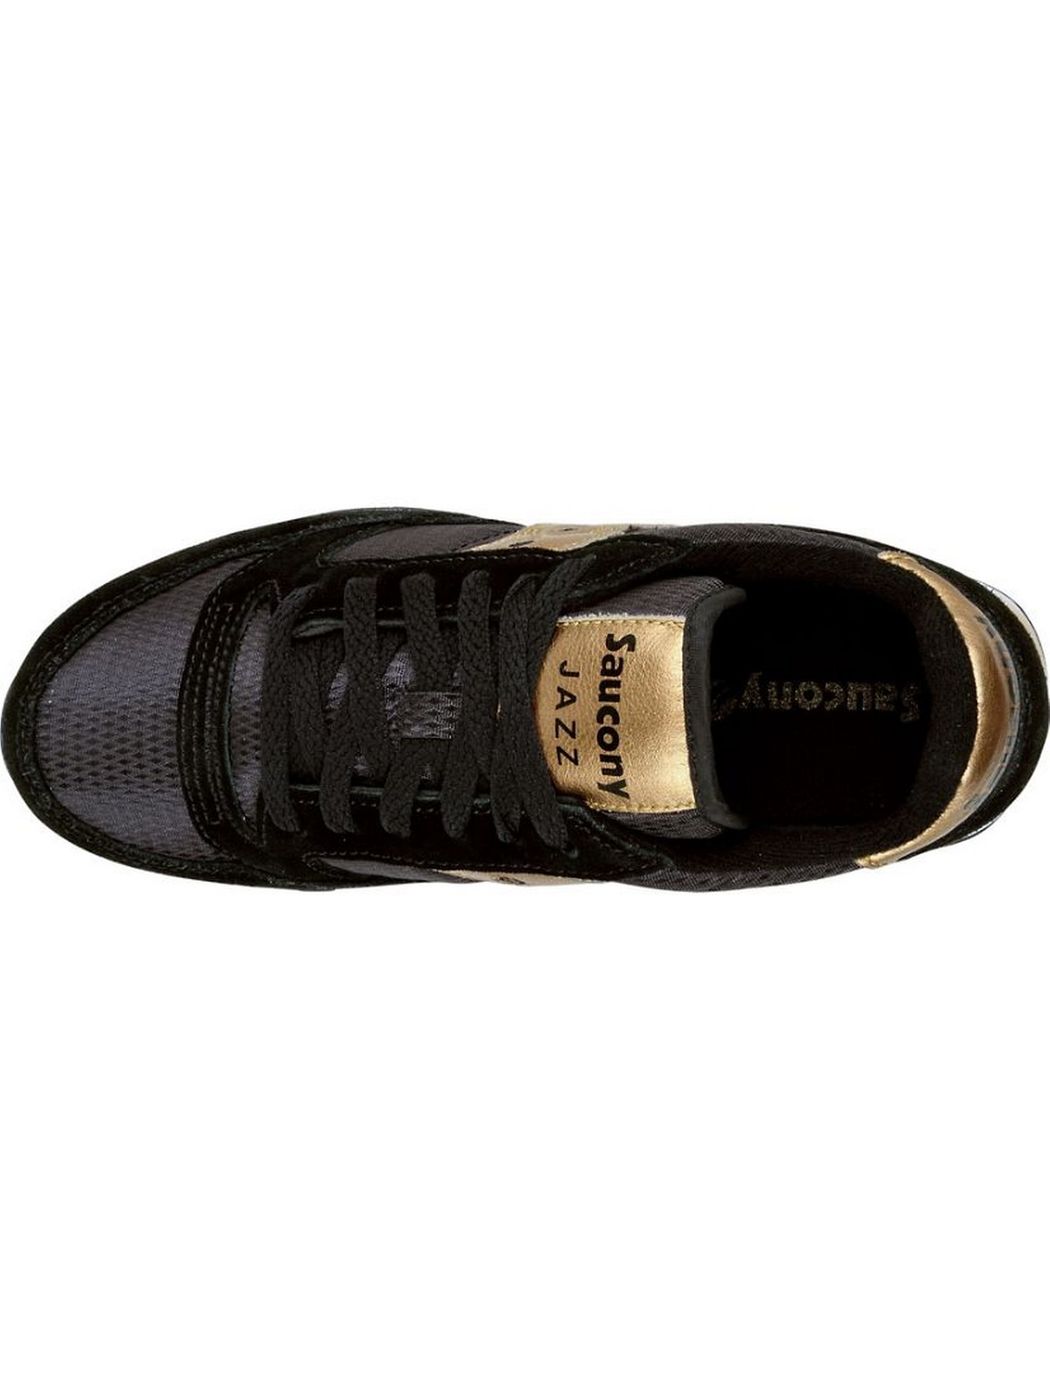 SAUCONY Sneaker Donna Jazz original S1044-521 Nero